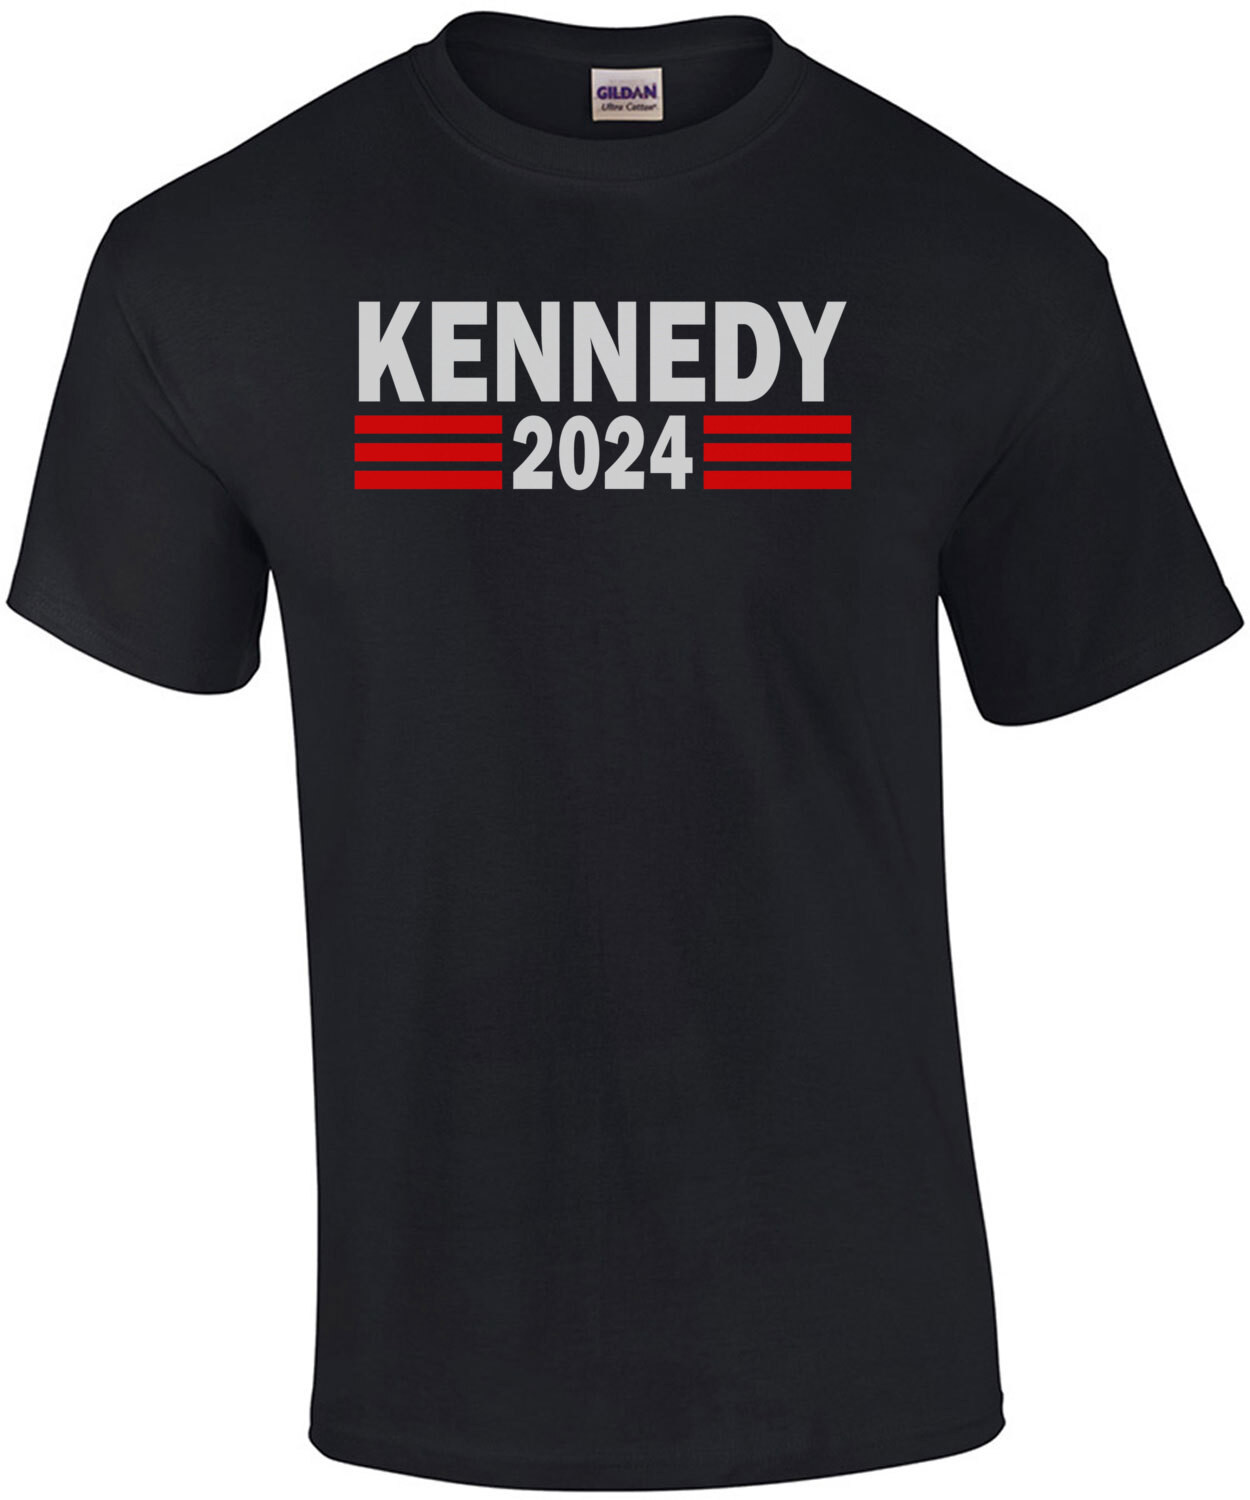 Kennedy 2024 - Robert Kennedy 2024 Election T-Shirt